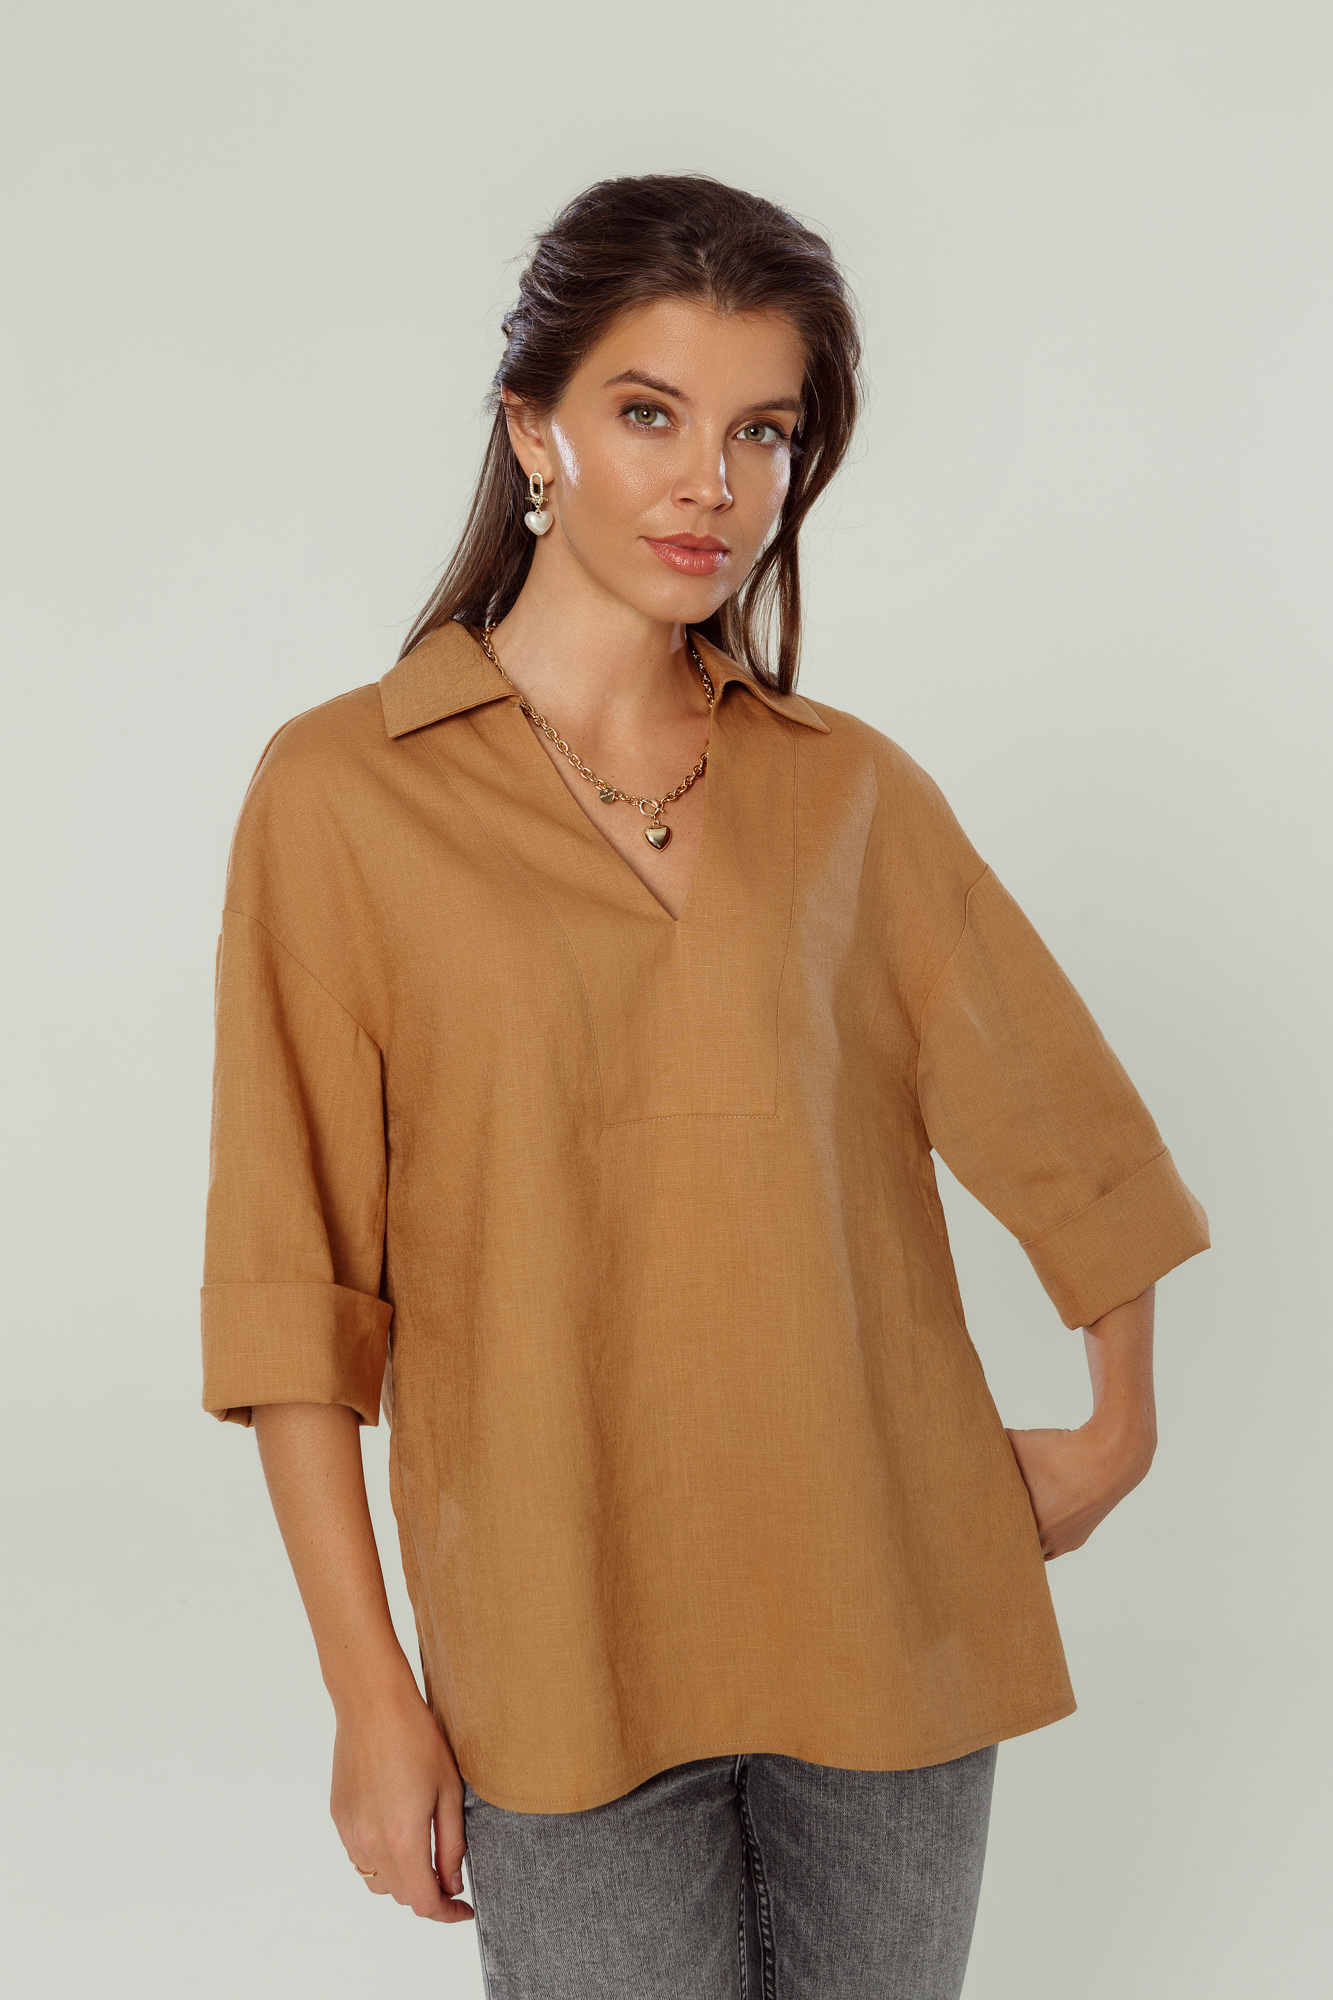 Женская блузка КМ 5-003 Т карамель